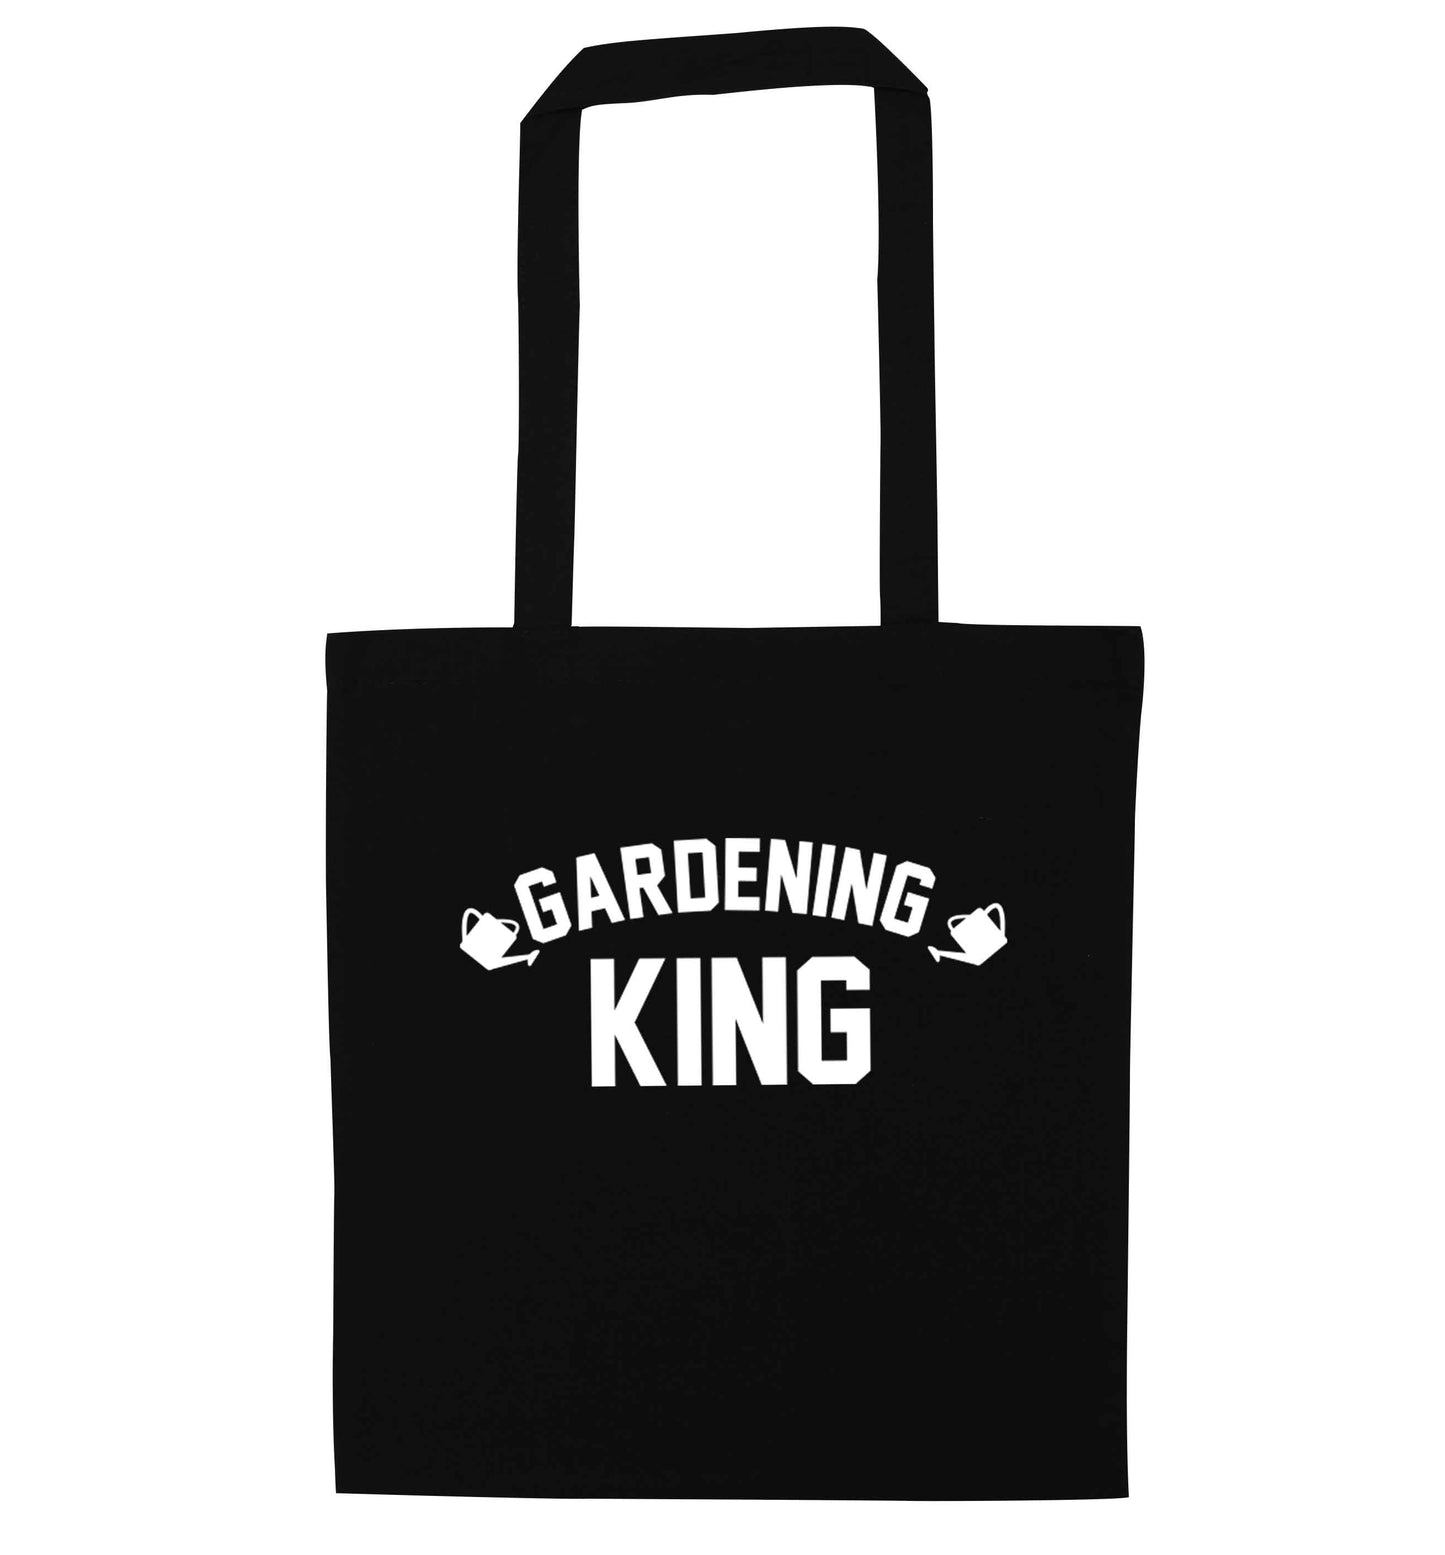 Gardening king black tote bag